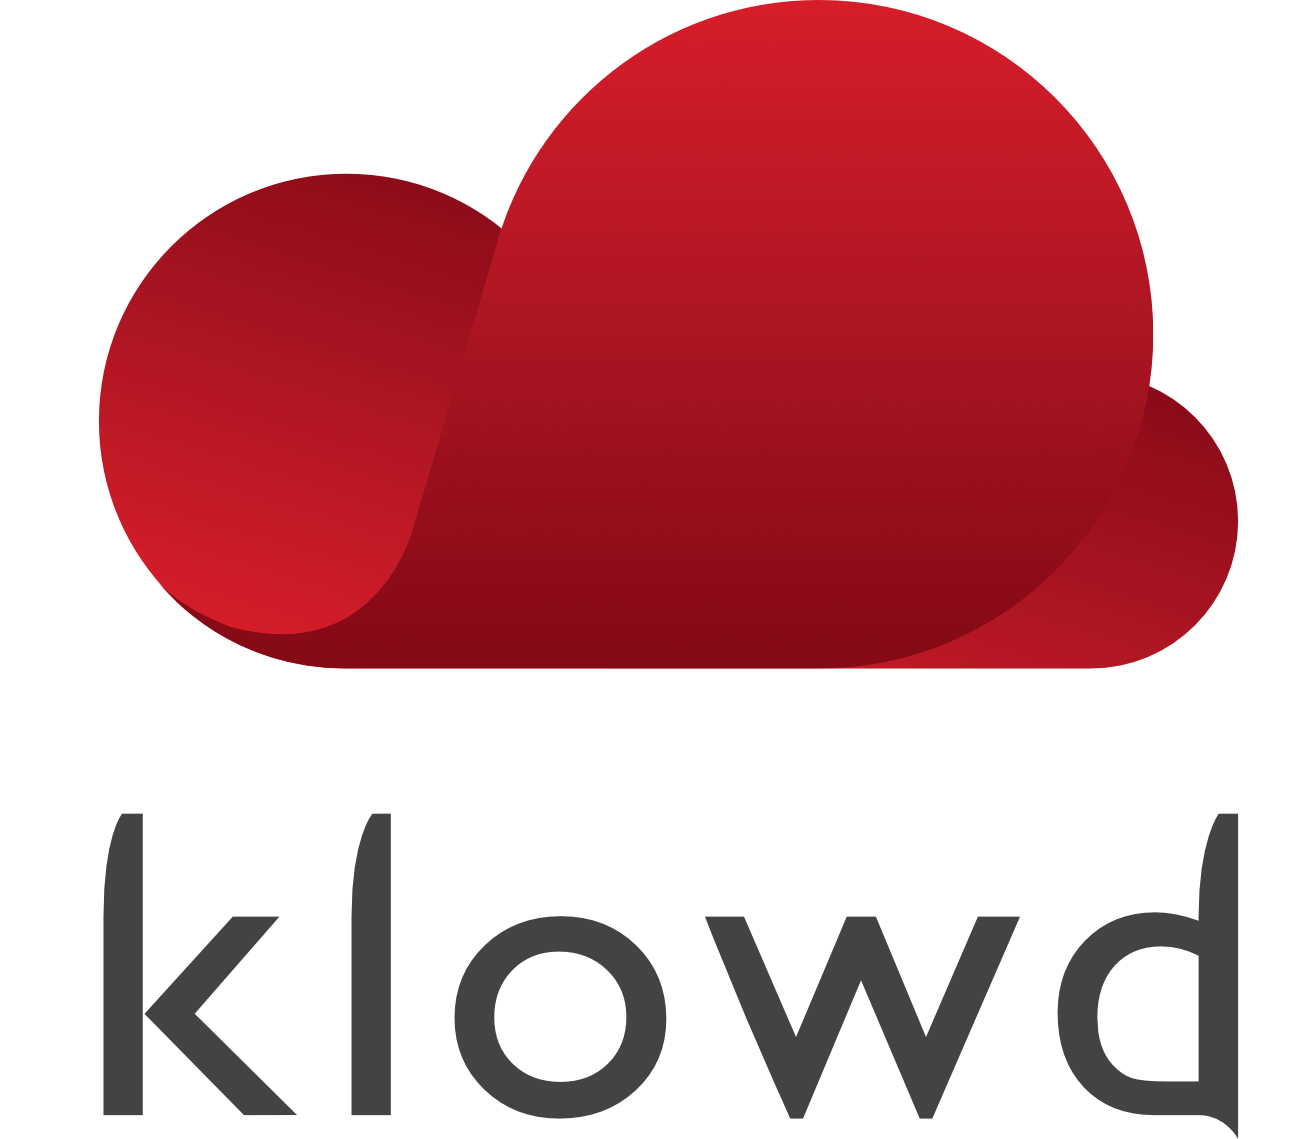 klowd.mobile | Refurbished iPhone & iPad